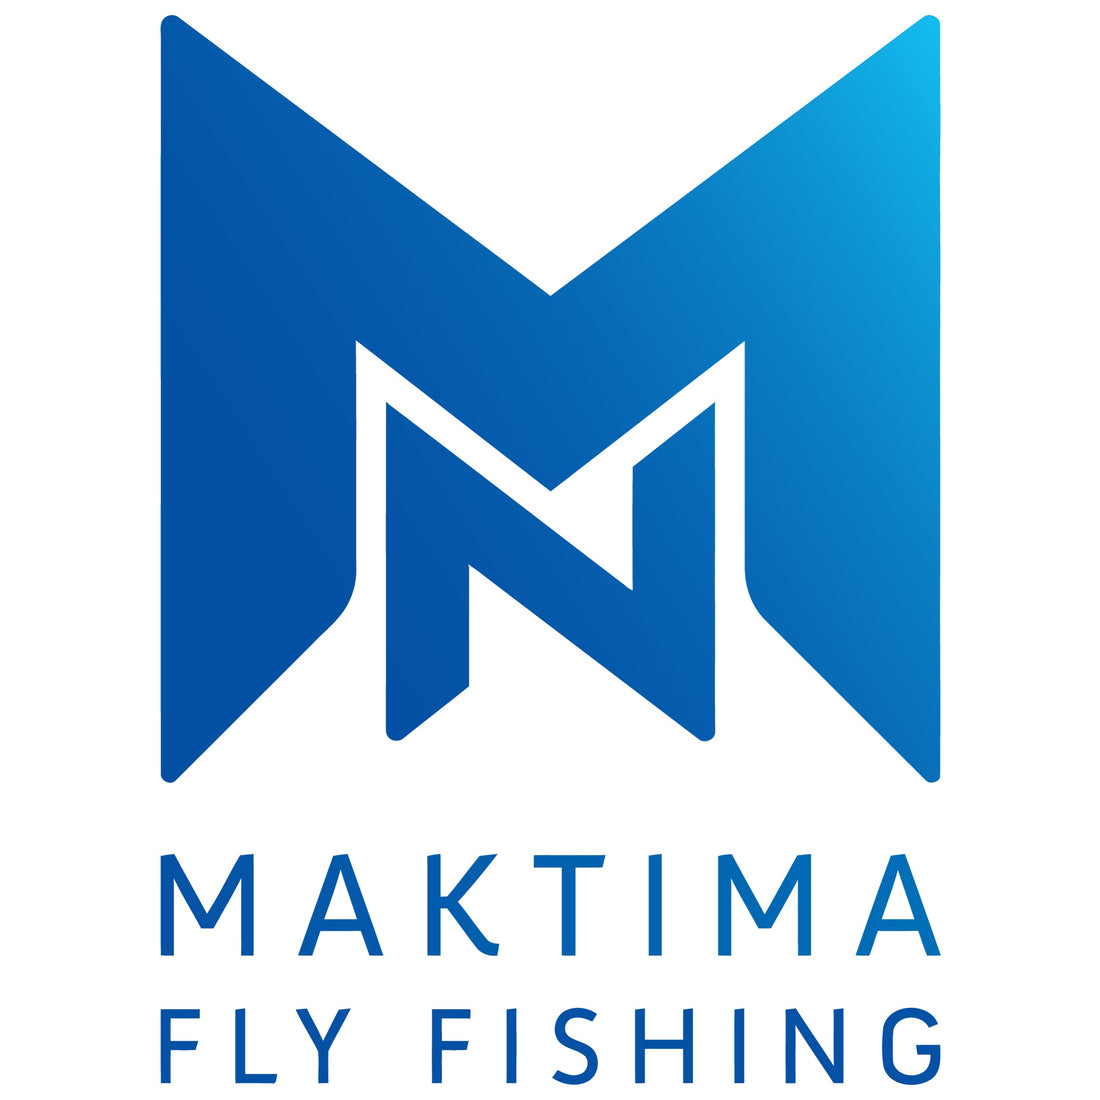 NMaktima Fly Fishing website Launch